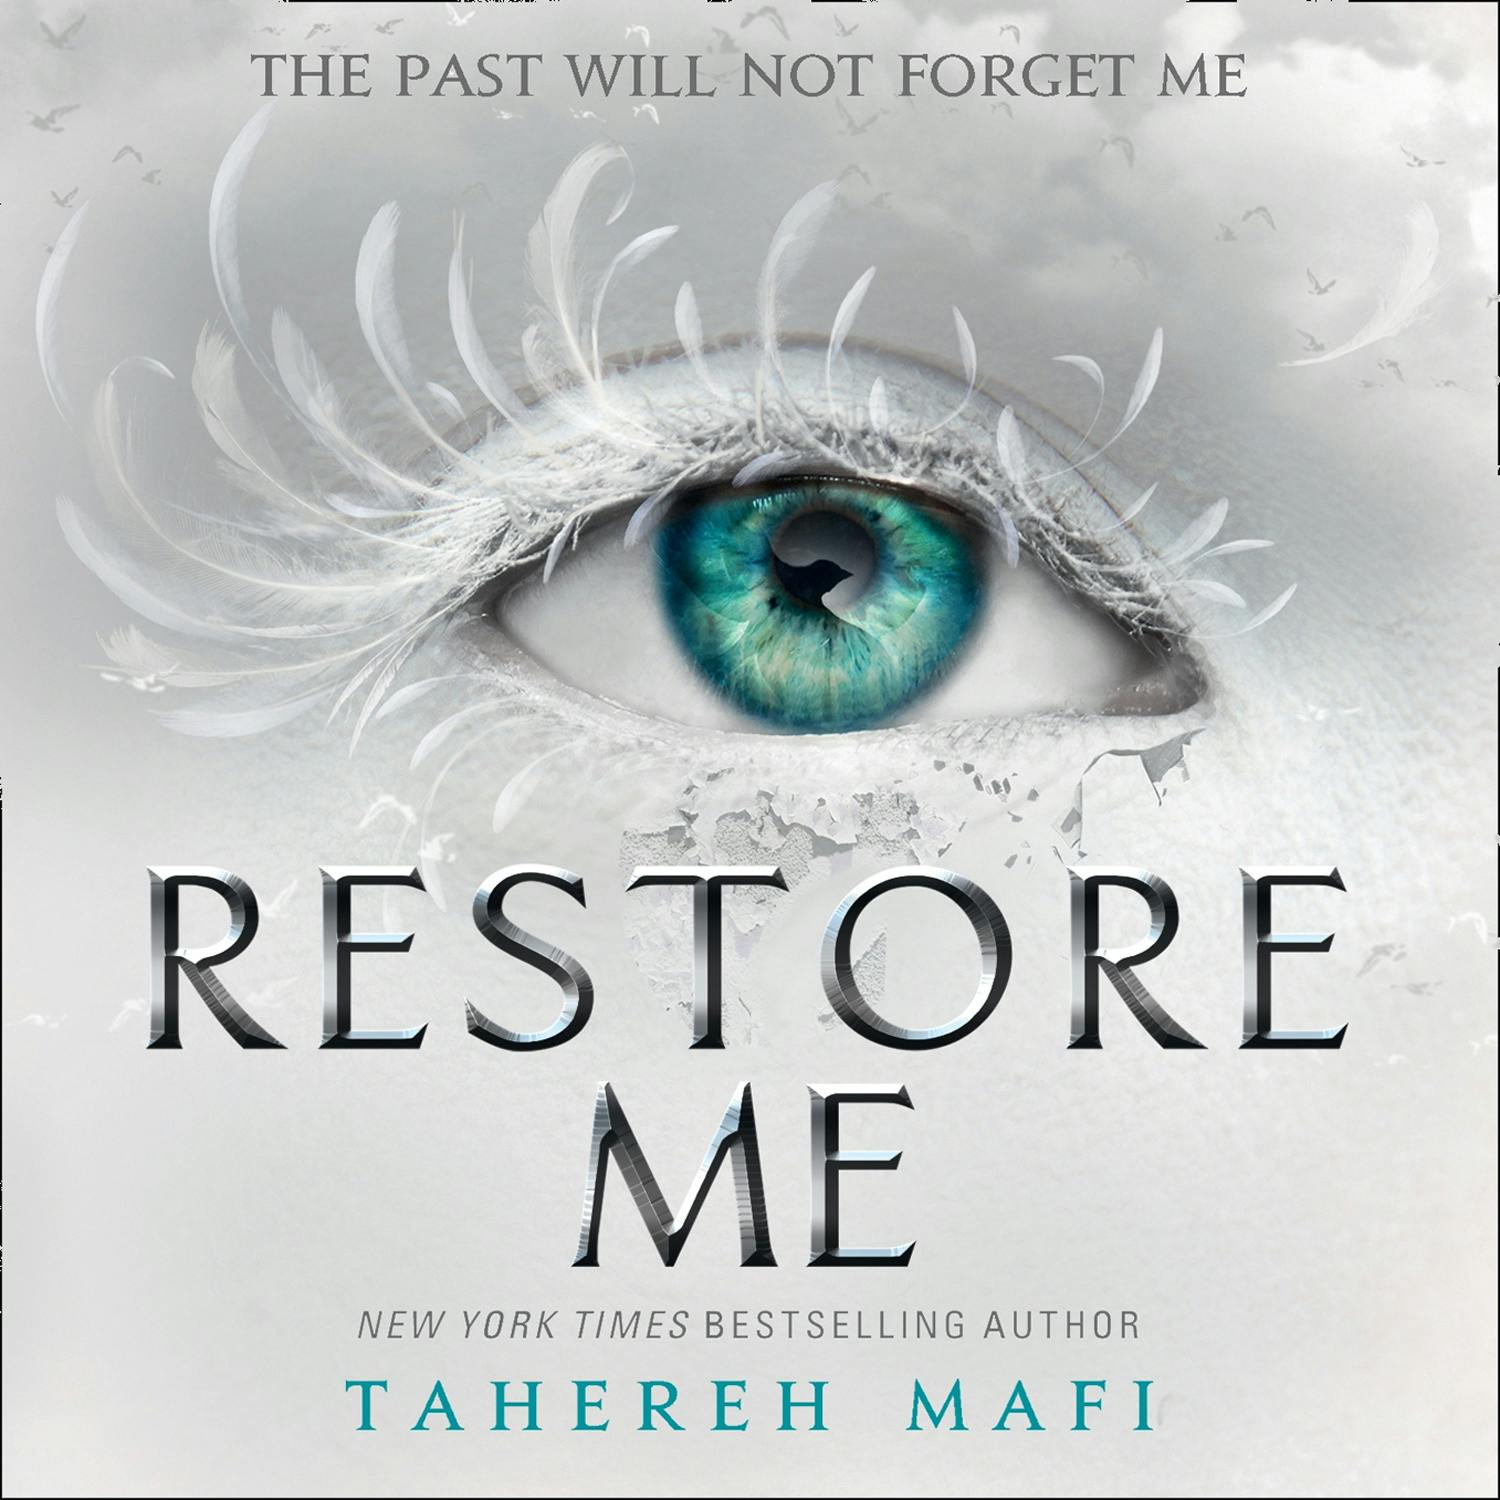 Restore Me - Tahereh Mafi